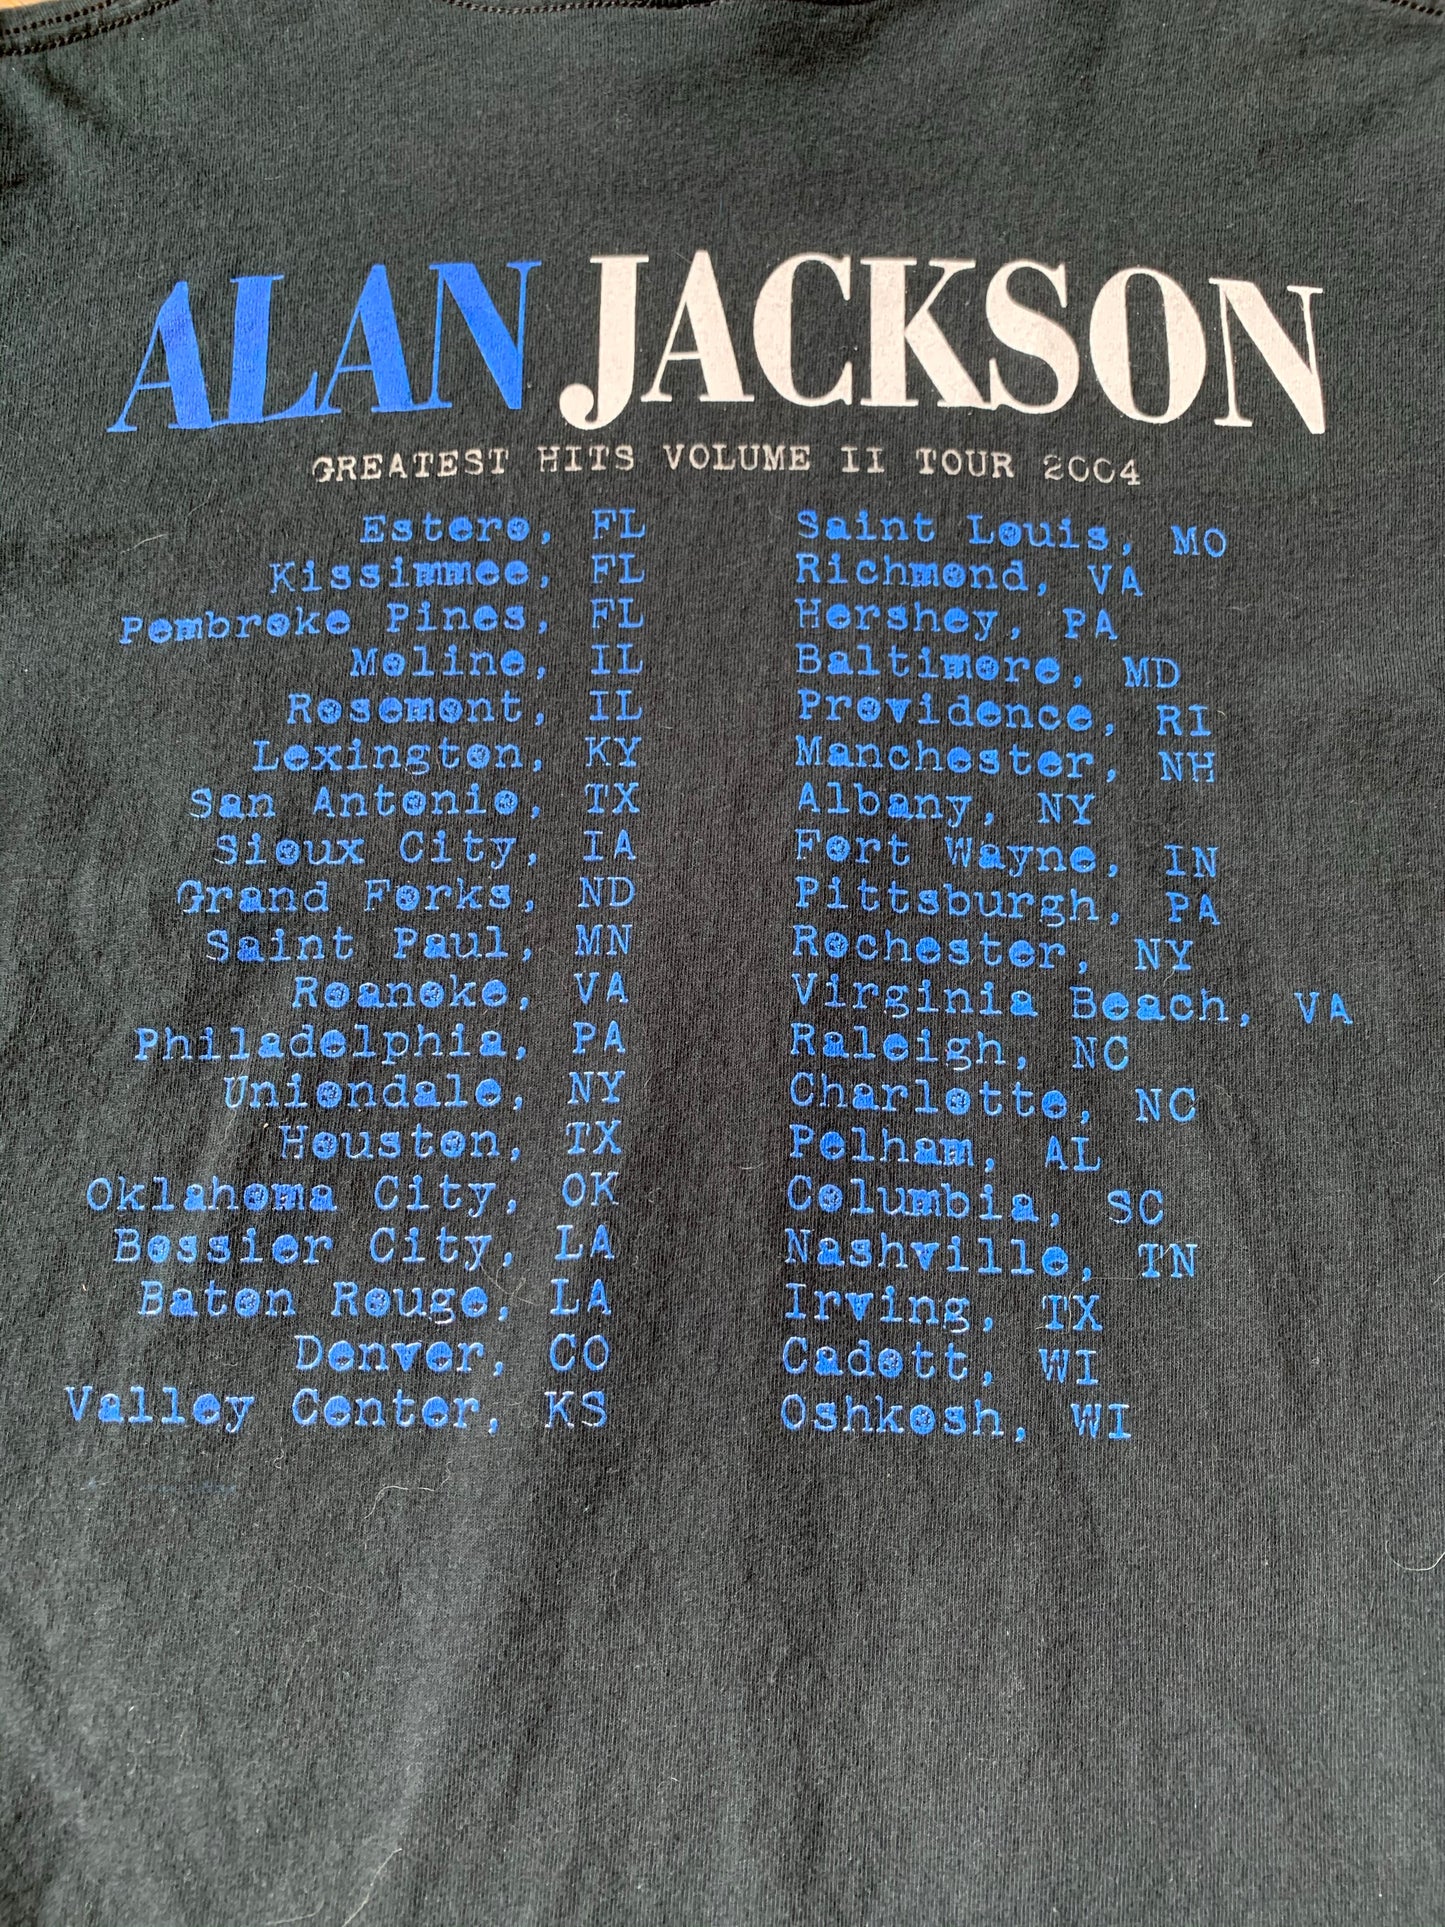 2004 Alan Jackson Tour Tee